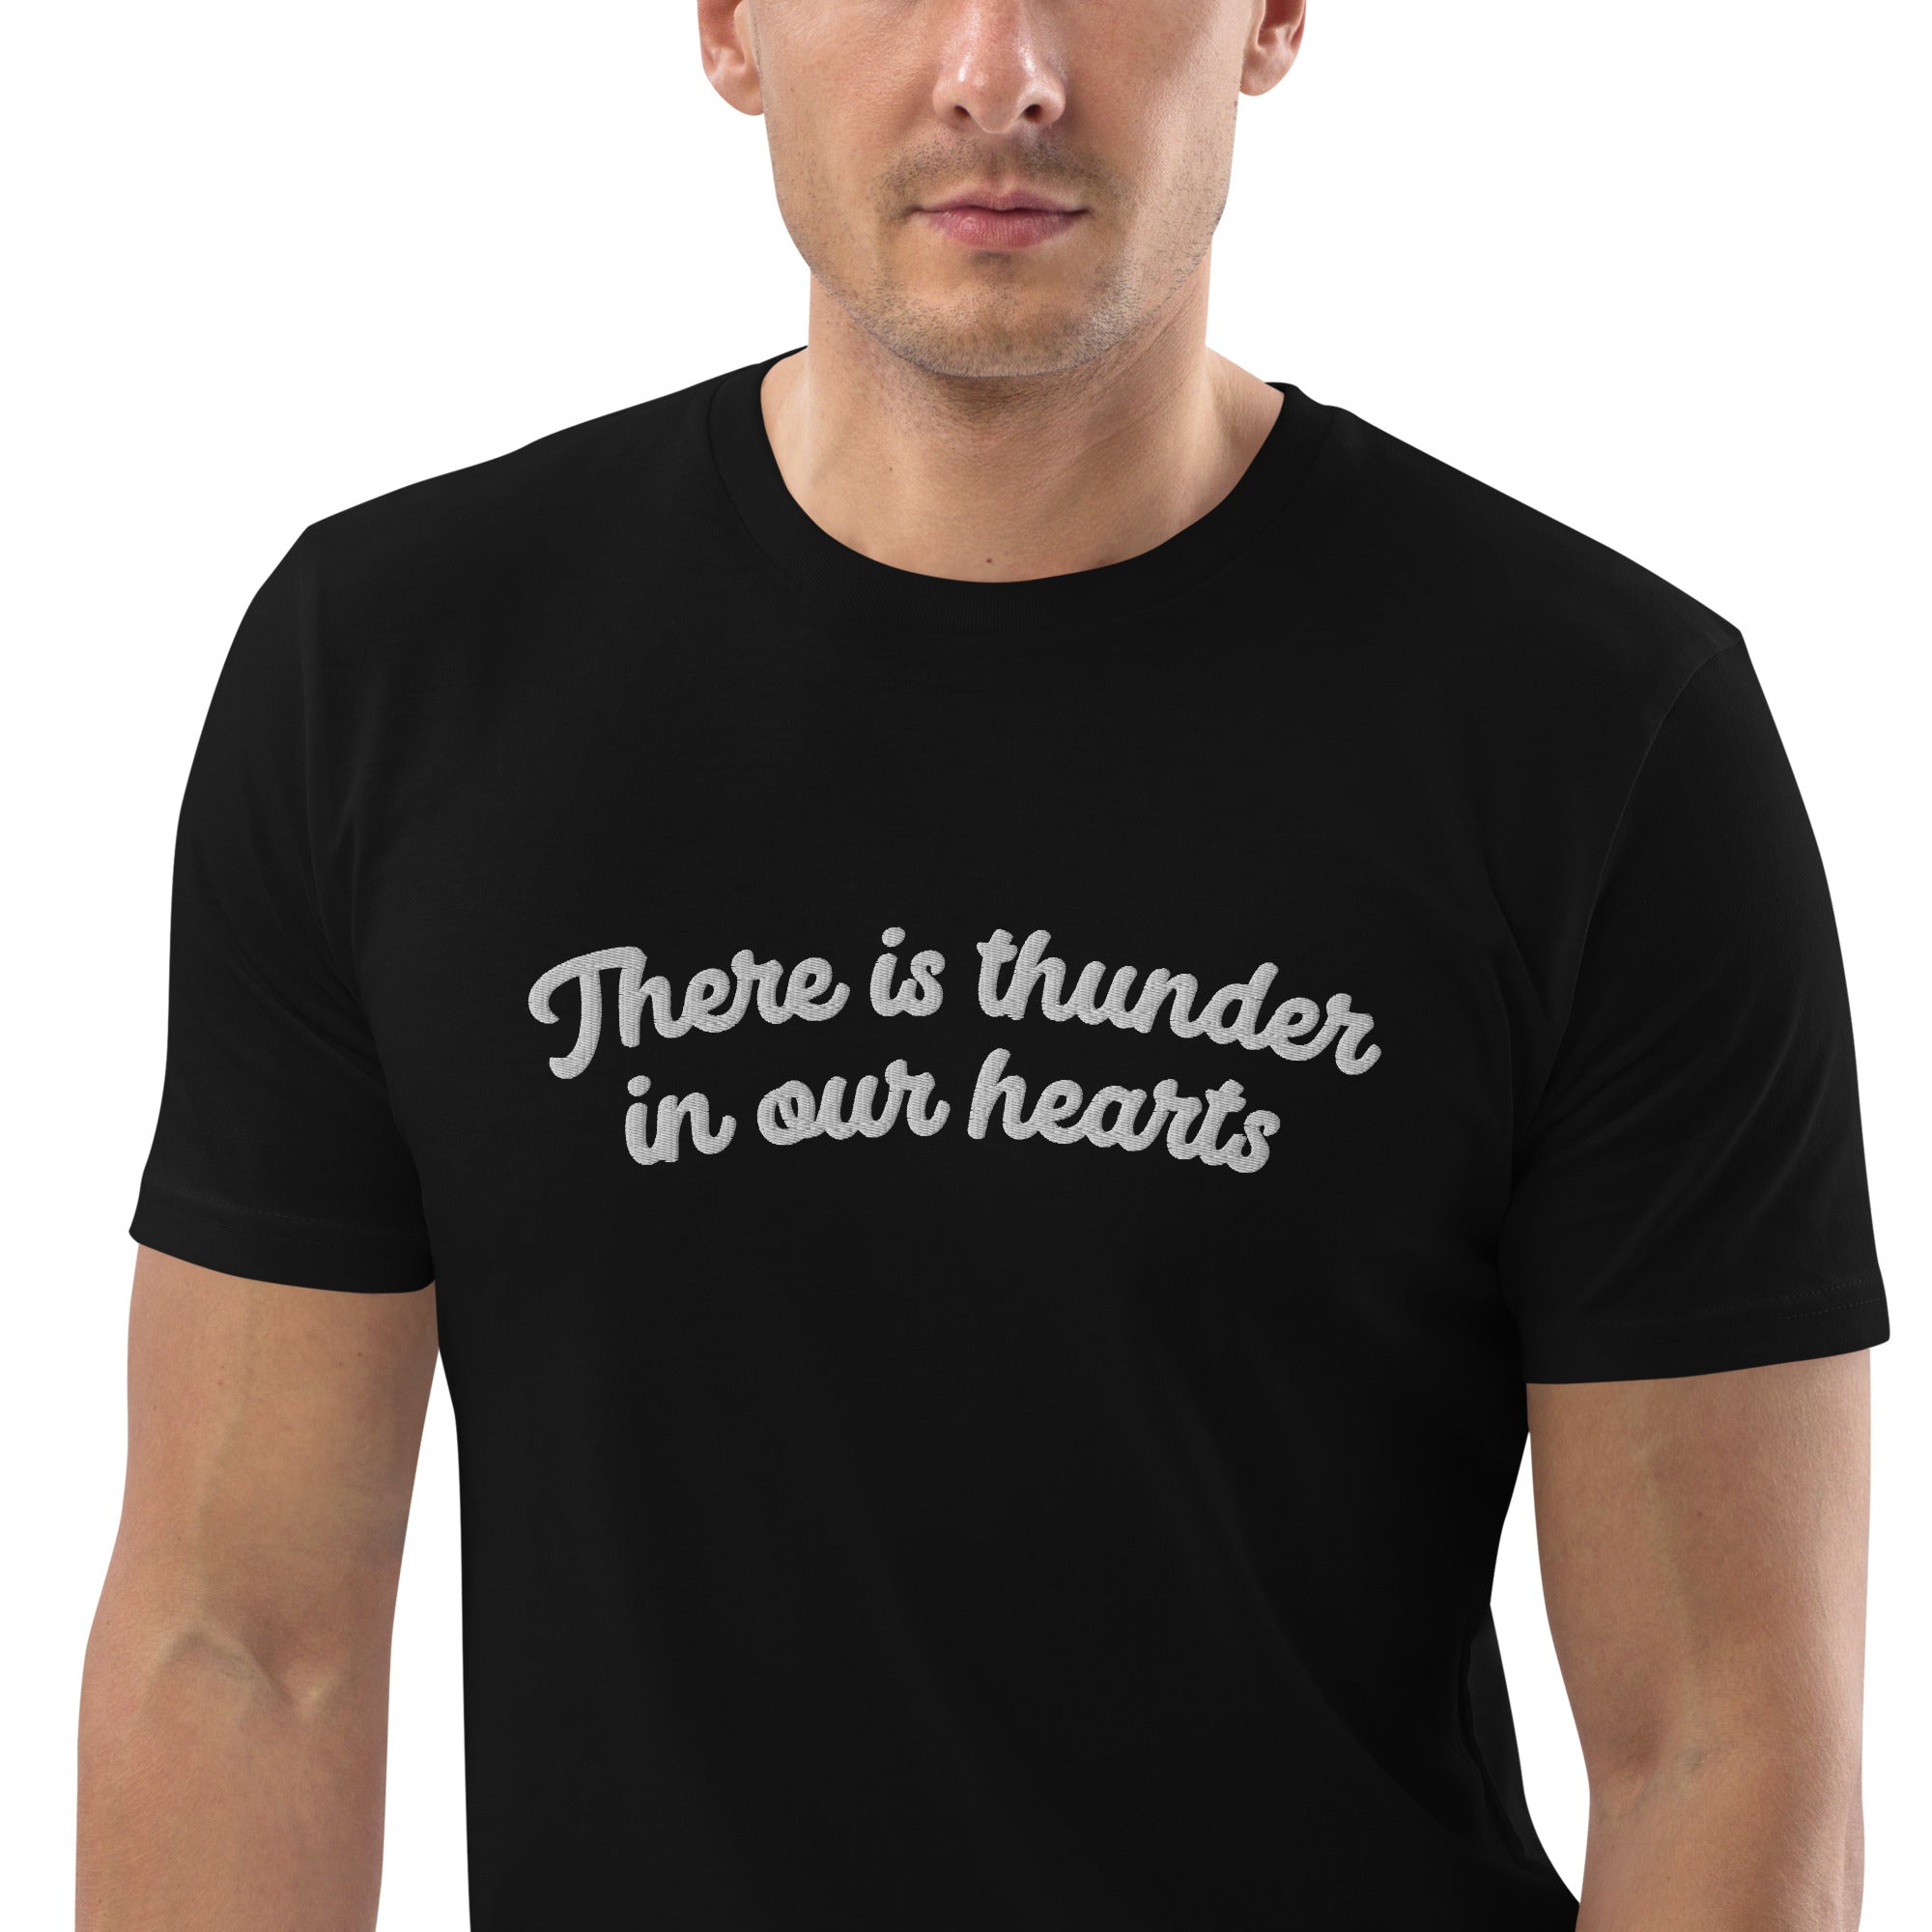 HAY TRUENO EN NUESTROS CORAZONES Camiseta bordada de algodón orgánico unisex - texto blanco